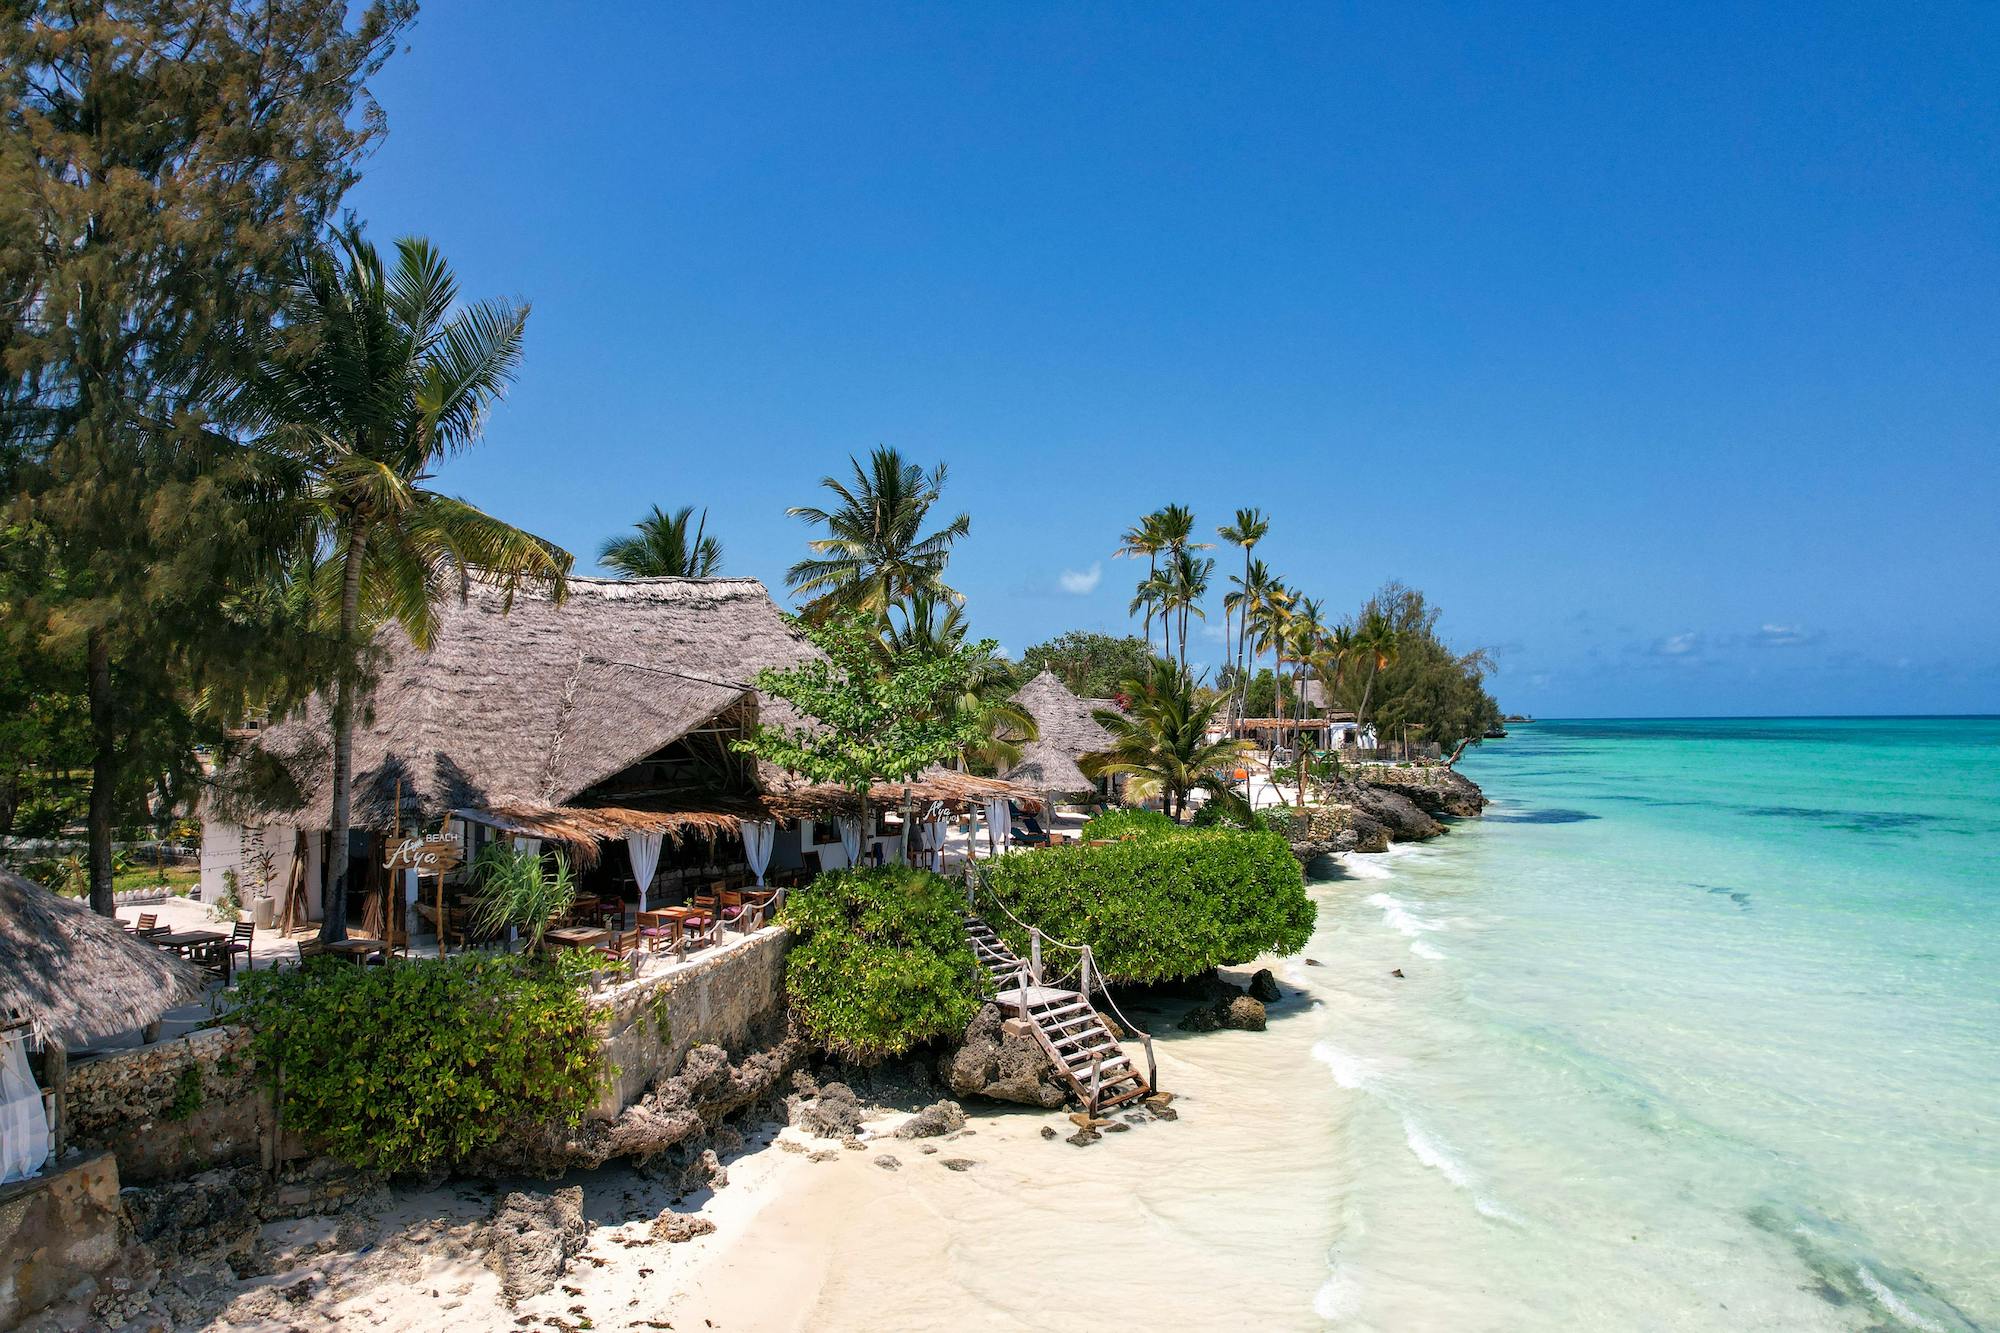 10-Day Best Honeymoon Luxury Safari and Zanzibar Beach